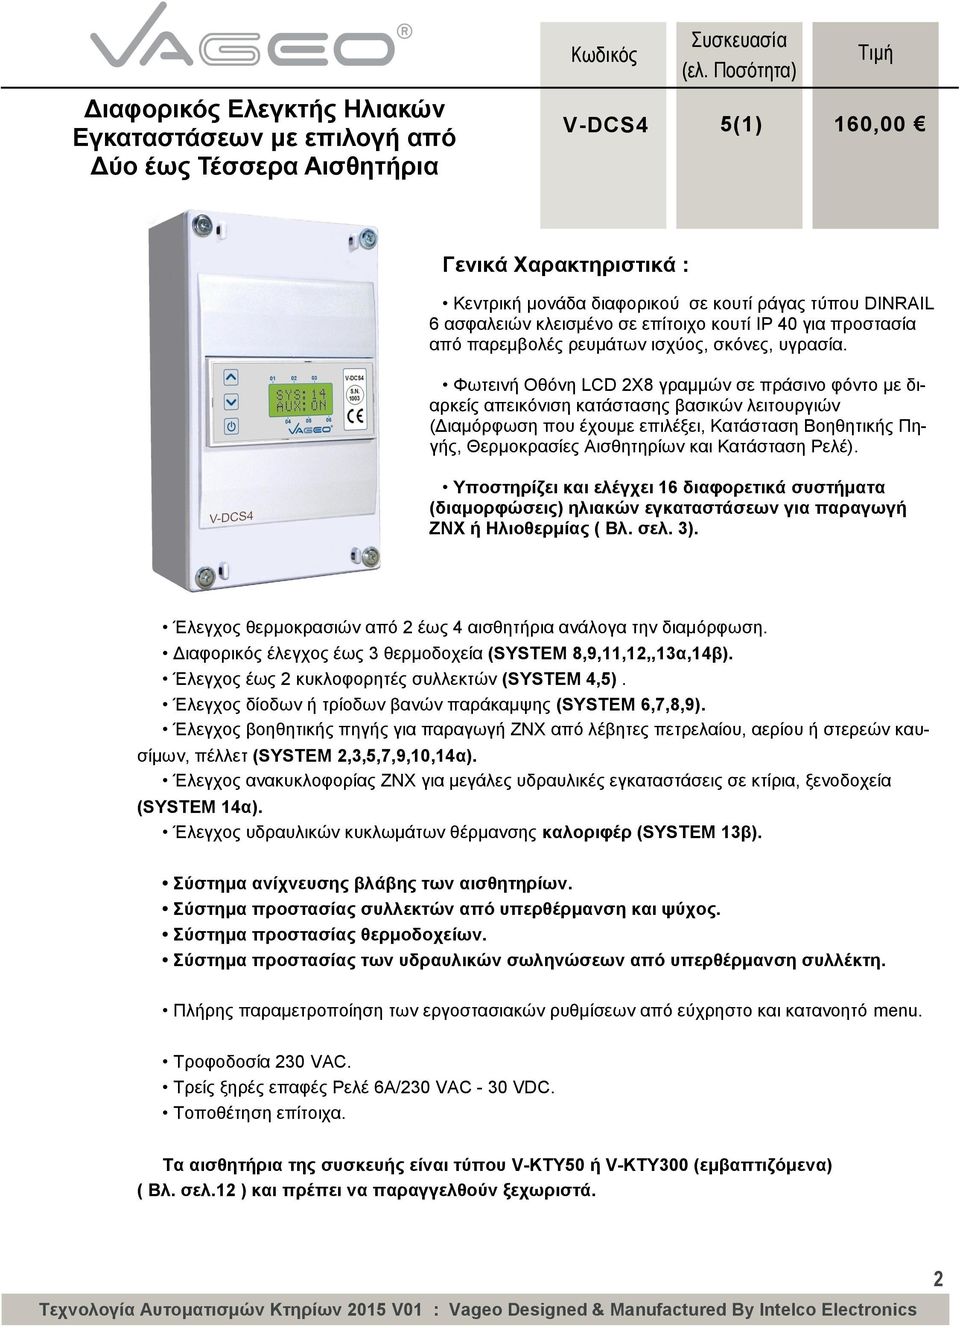 Φωτεινή Οθόνη LCD 2Χ8 γραμμών σε πράσινο φόντο με διαρκείς απεικόνιση κατάστασης βασικών λειτουργιών (Διαμόρφωση που έχουμε επιλέξει, Κατάσταση Βοηθητικής Πηγής, Θερμοκρασίες Αισθητηρίων και